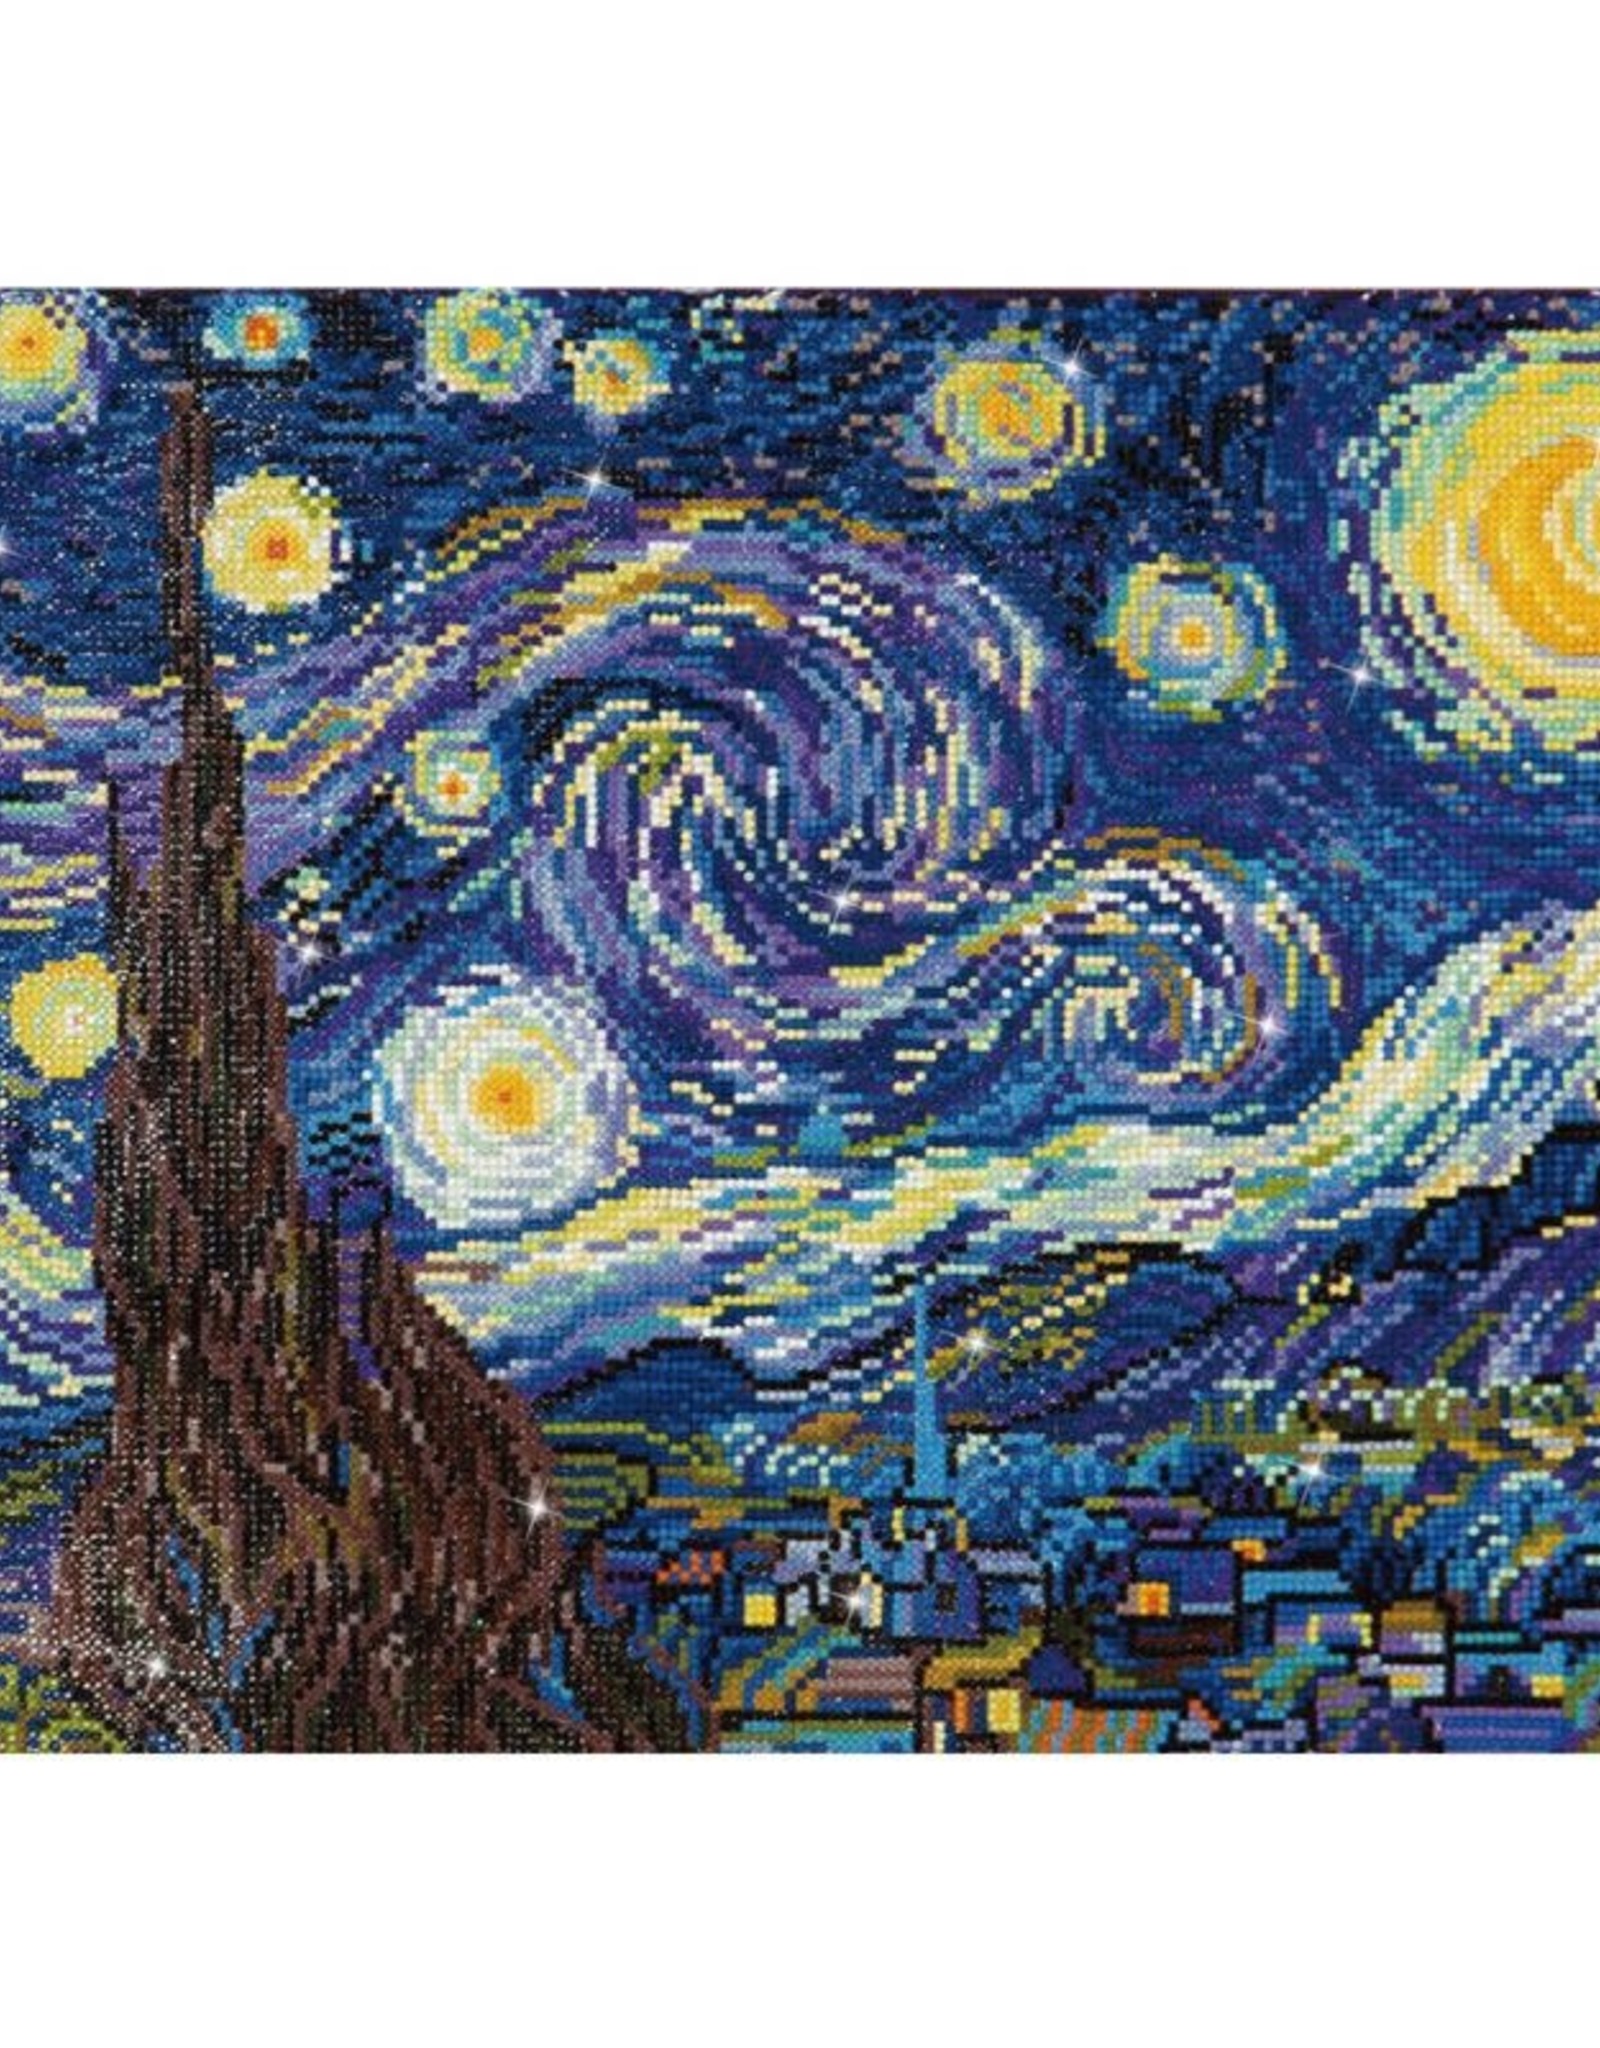 Diamond  Dotz Diamond Art Kit: Van Gogh's "Starry Night"